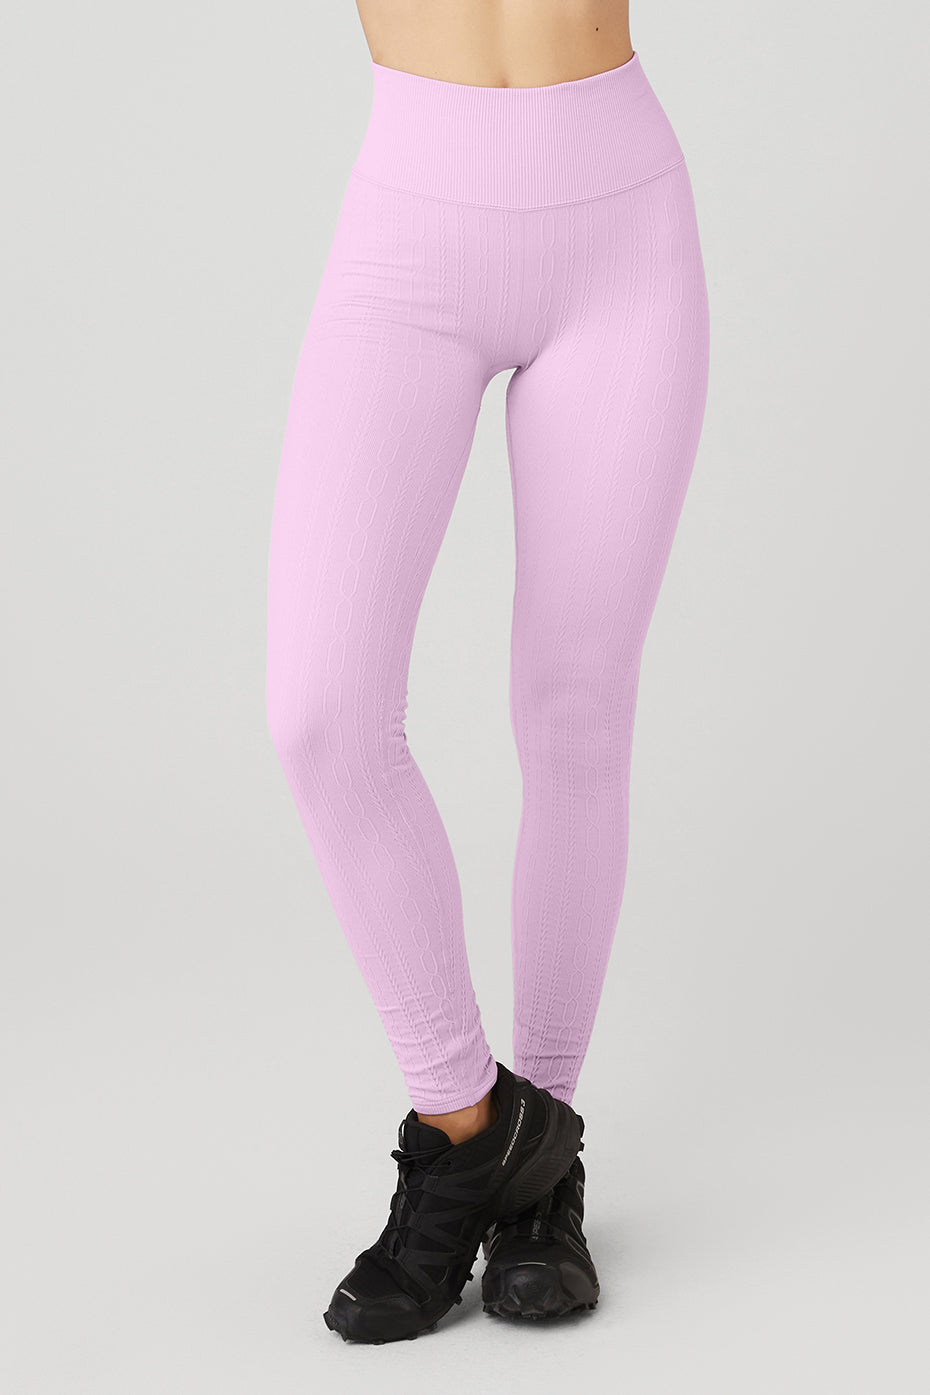 Leggings Depot Women's Ultra Soft High Waist Legging Pink RoseLY5R-R689-YOGA